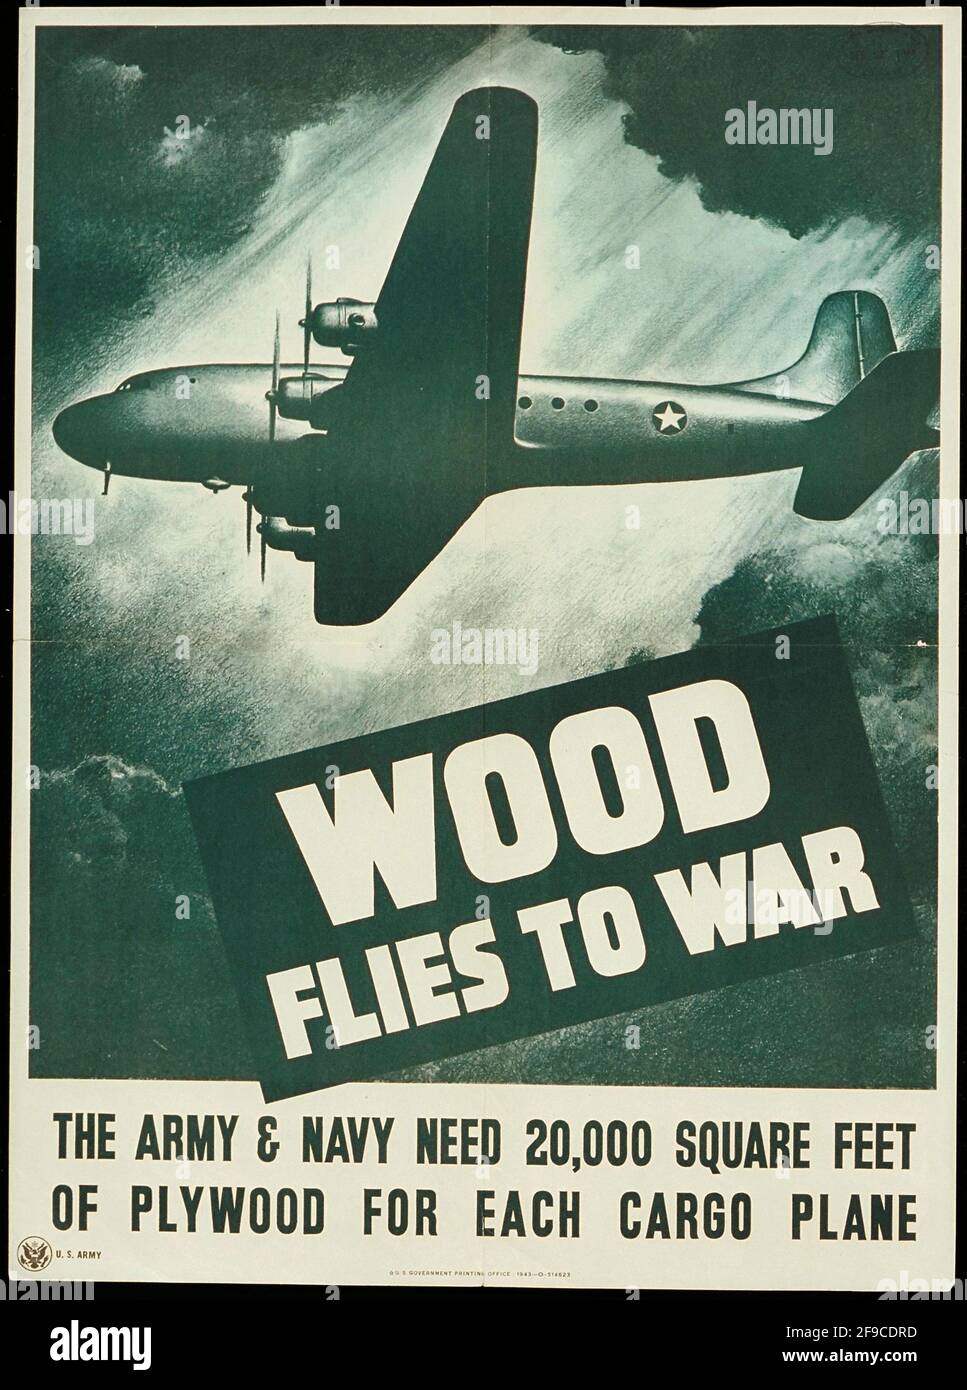 Ein amerikanisches Plakat aus dem 2. Weltkrieg über die zunehmende Holzproduktion in der Kriegsanstrengungen Stockfoto